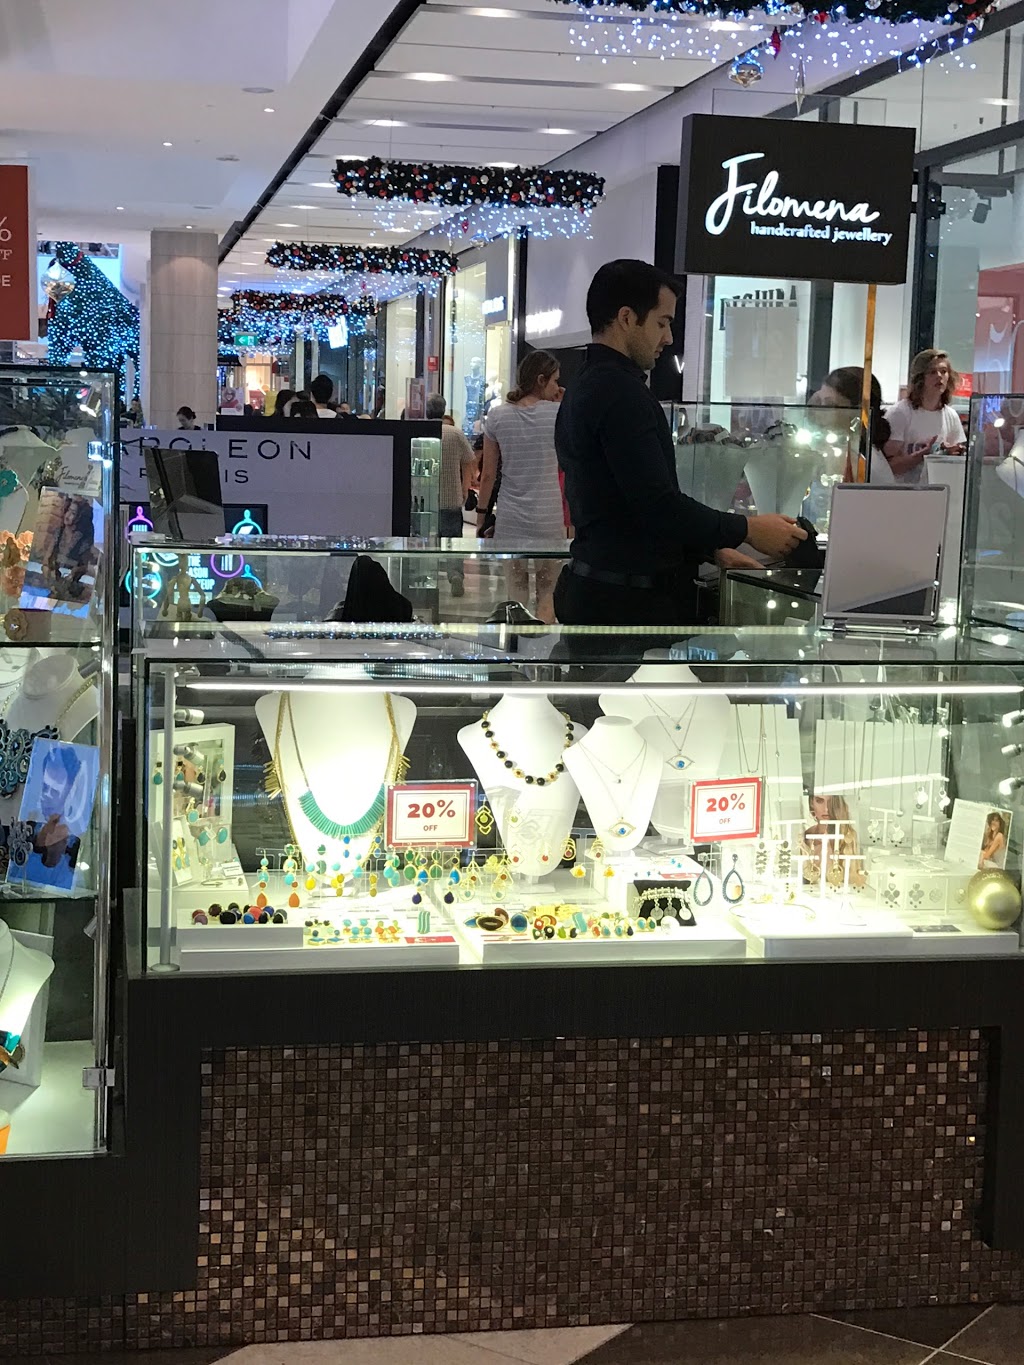 Filomena | jewelry store | 197 Herring Rd, Macquarie Park NSW 2113, Australia